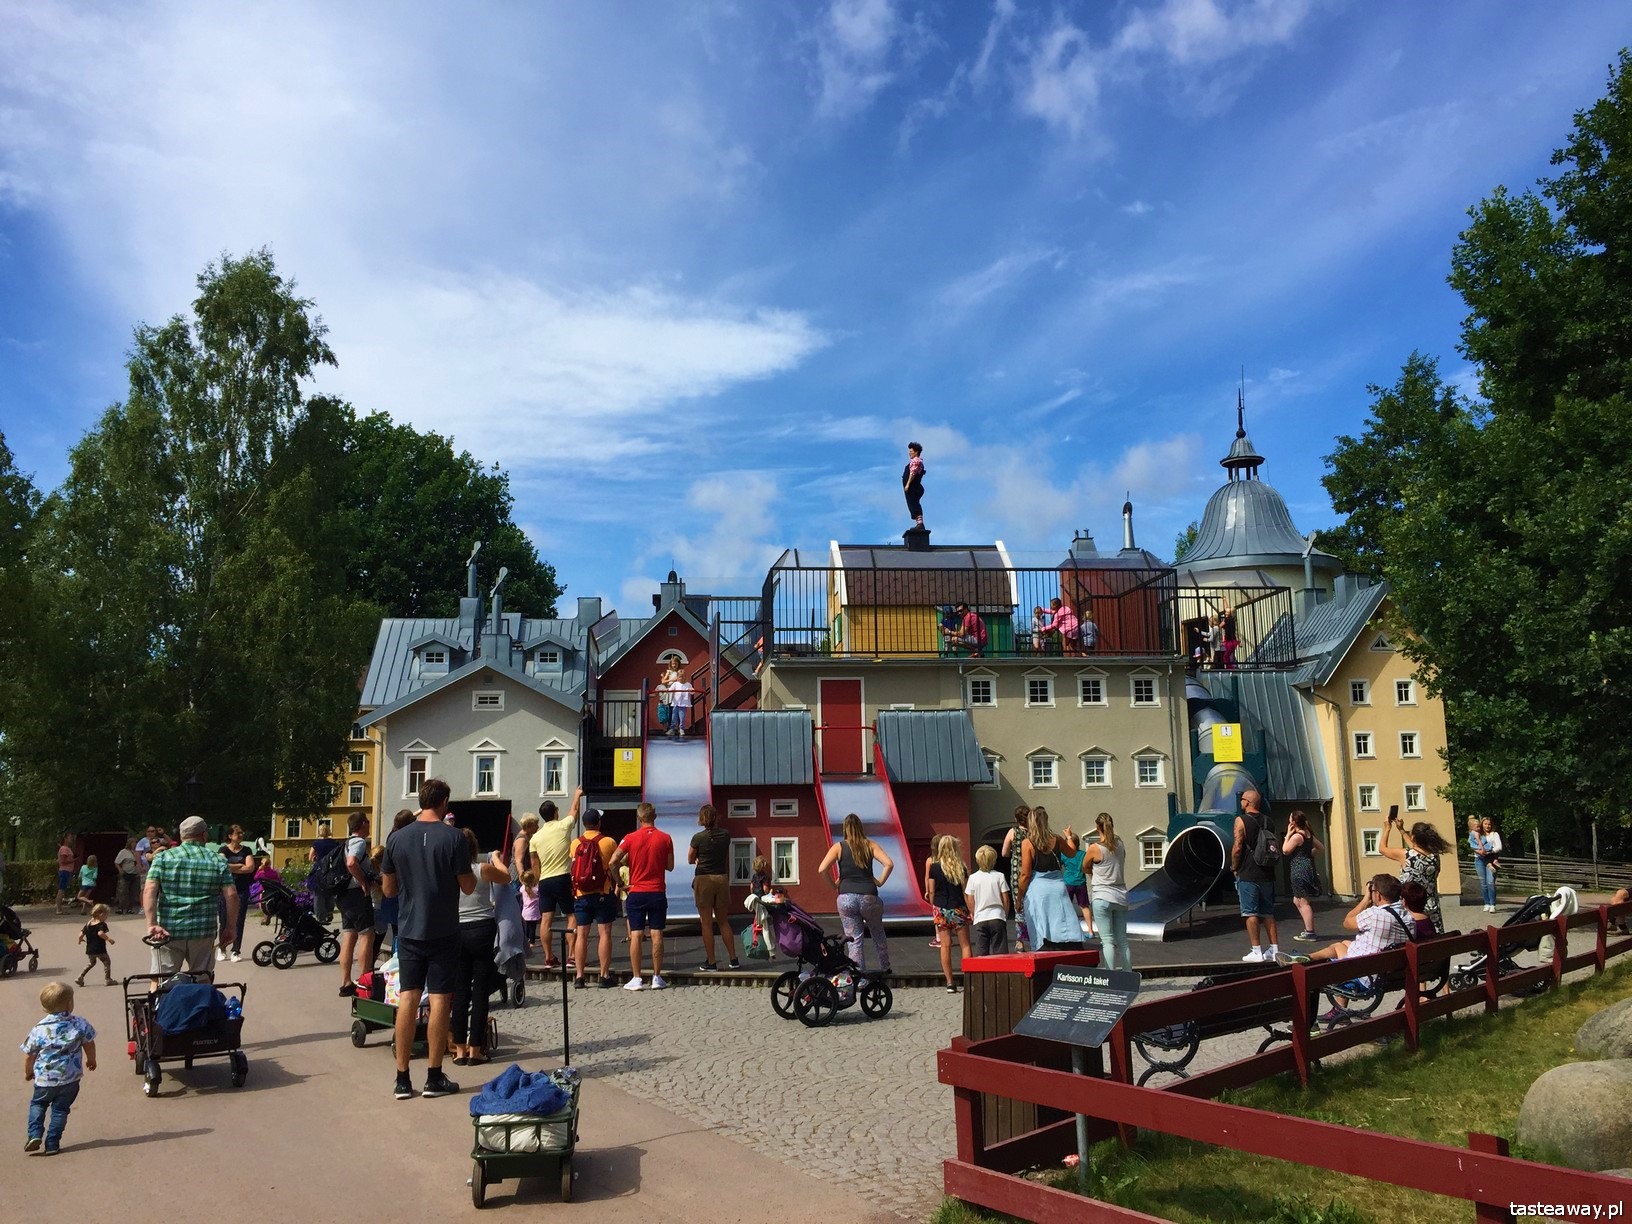 Szwecja, Vimmerby, co zobaczyć w Szwecji, Astrid Lindgren World, wioska Astrid Lindgren, atrakcje Szwecja, dom Karlssona